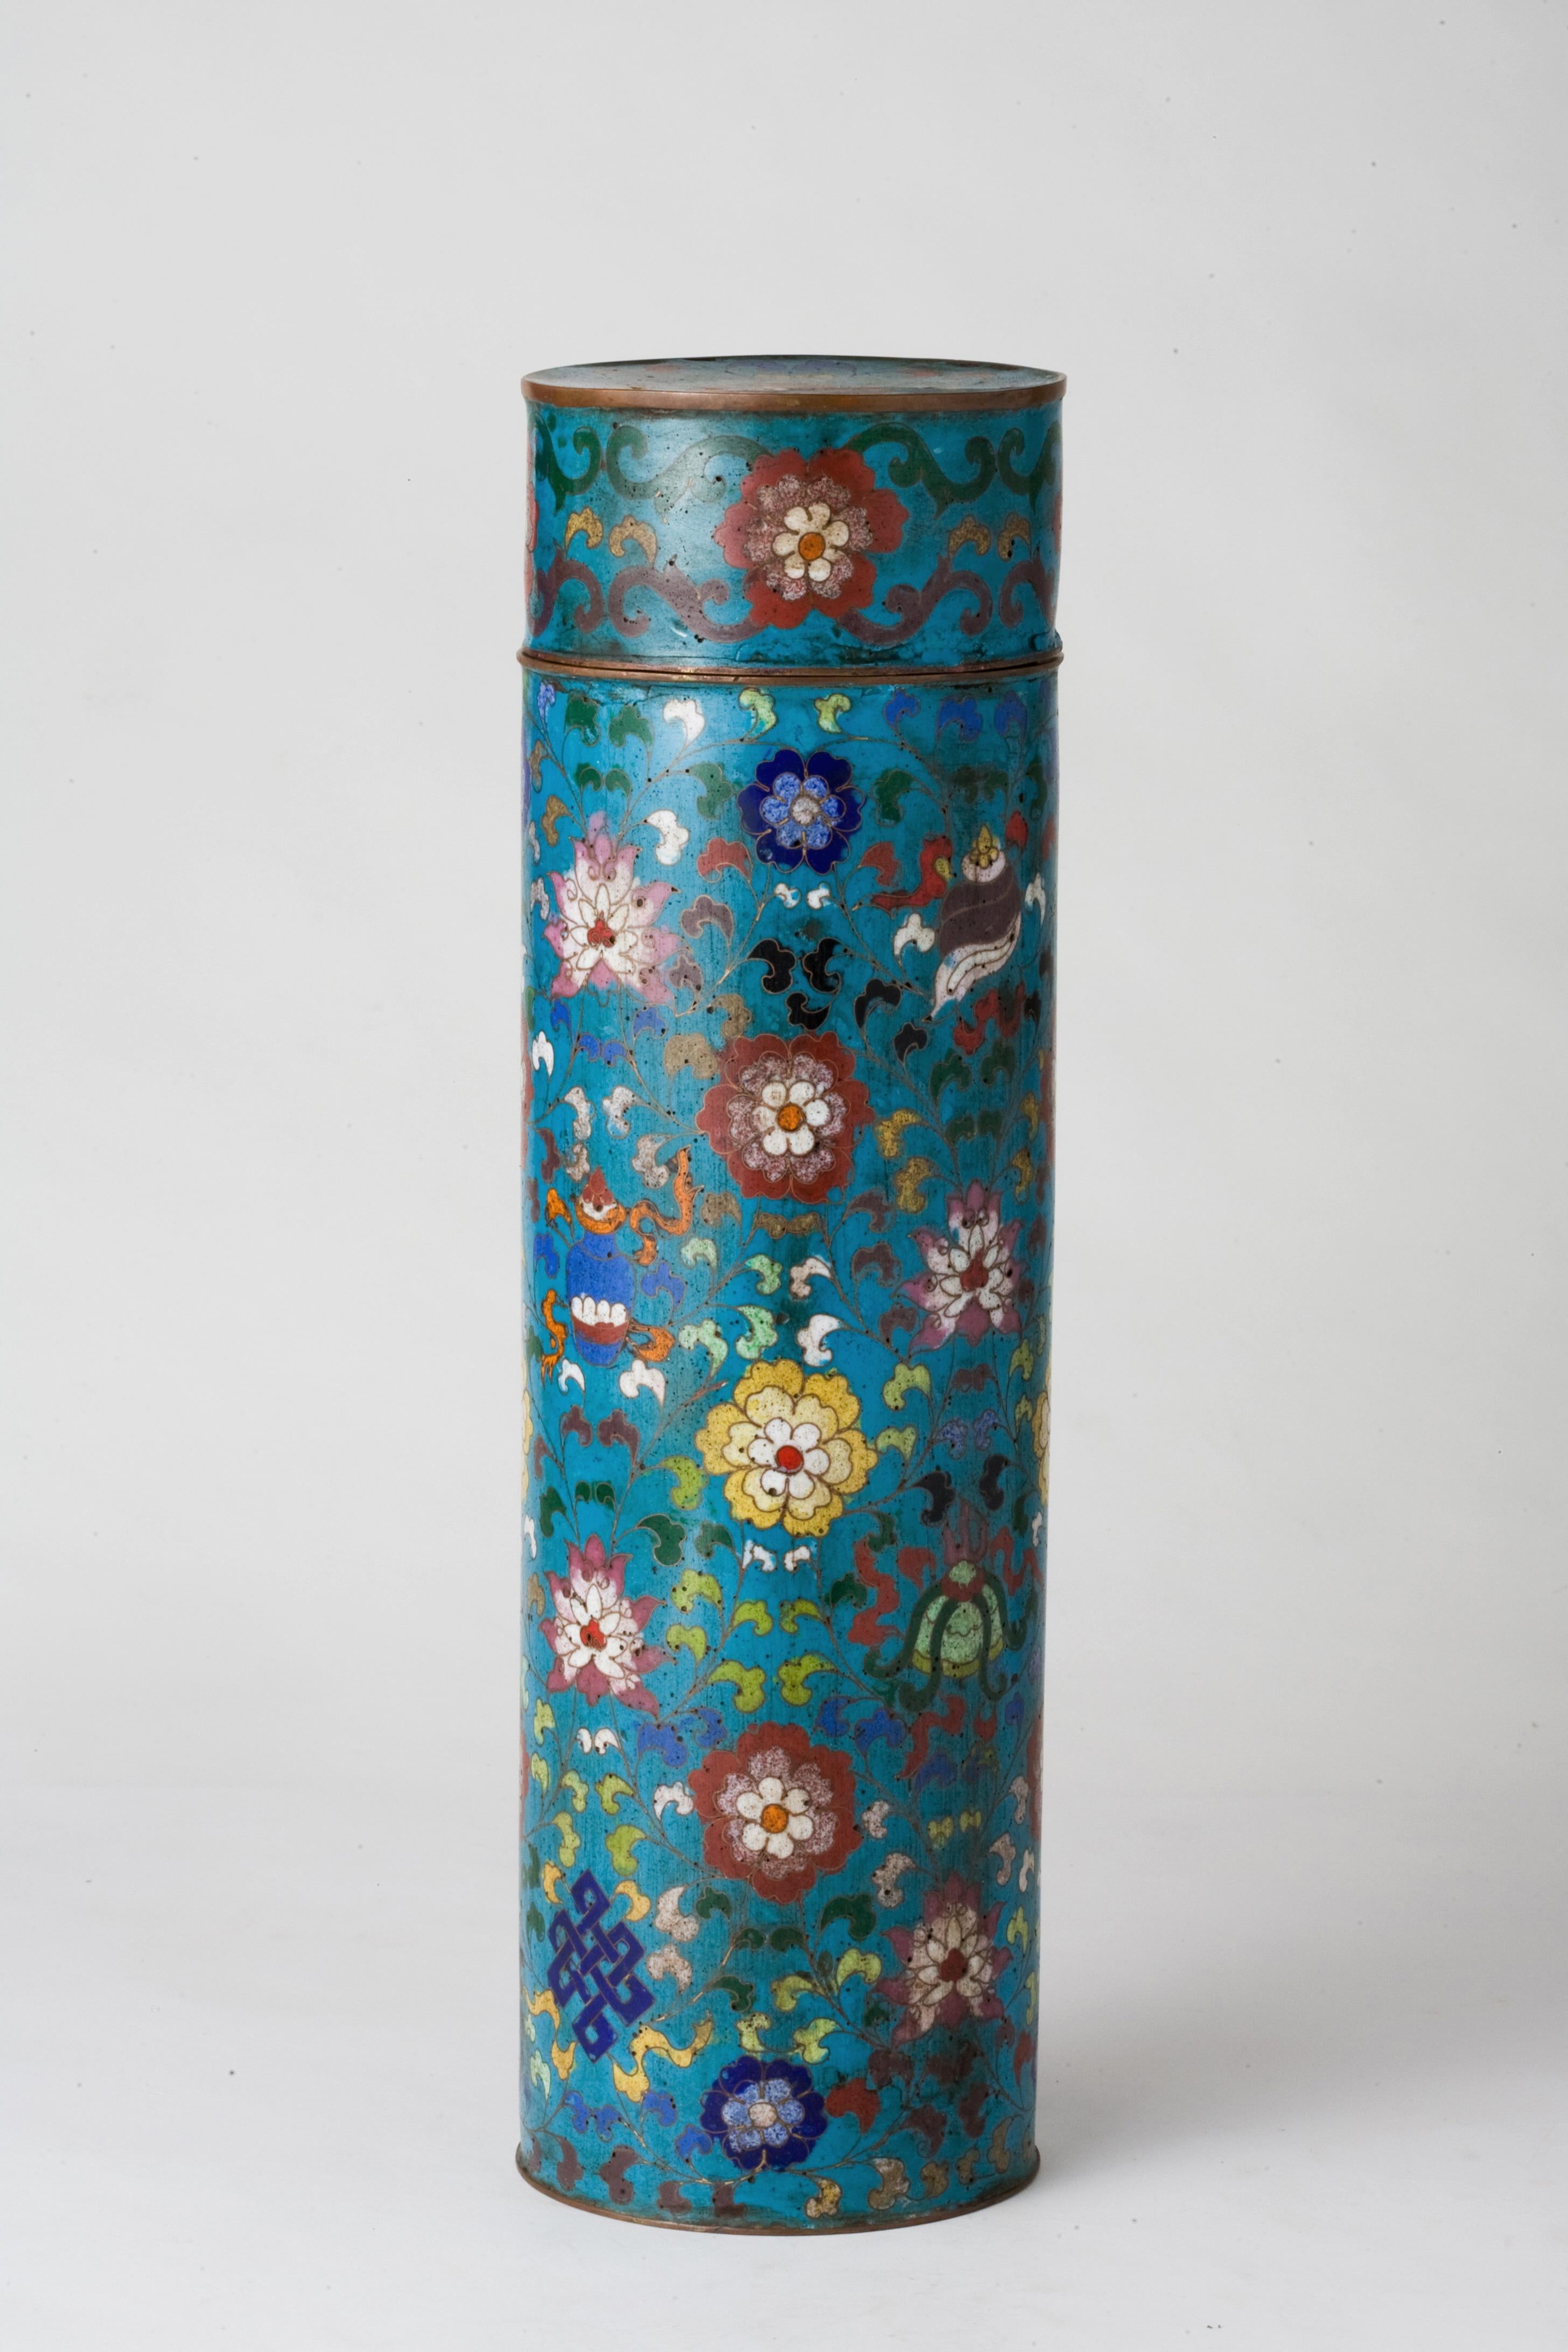 Ce vase exquis est un bel exemple de cloisonné de la dynastie Ming, une époque réputée pour avoir révolutionné la technique du cloisonné avec un design complexe et un travail d'émail vibrant. Le vase cylindrique est méticuleusement orné de motifs